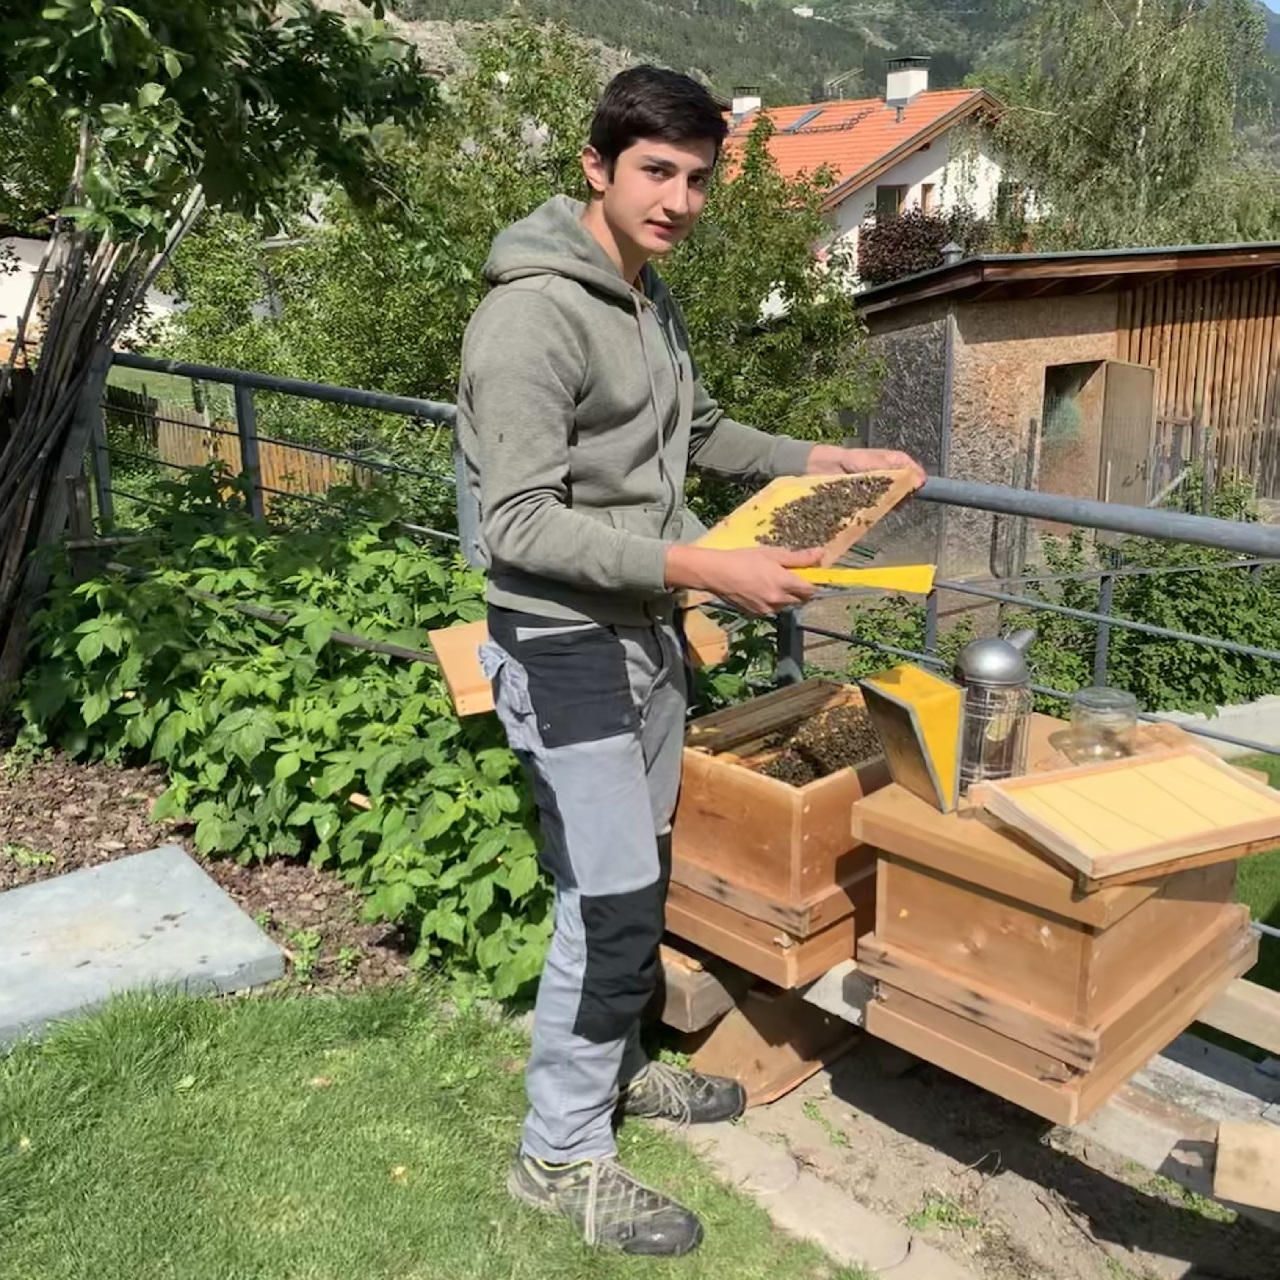 Waalhof organic farm holidays, bee keeping